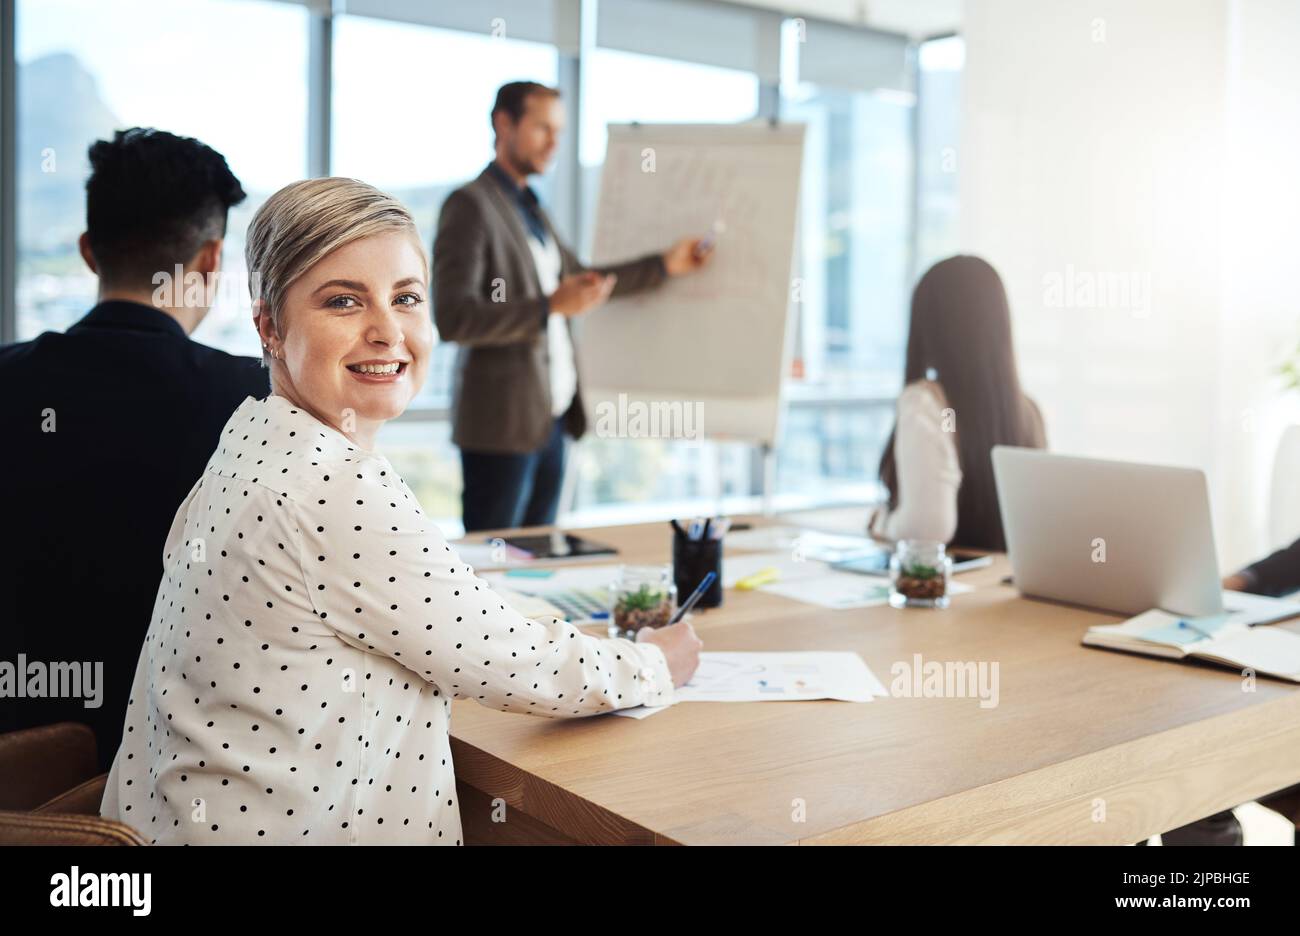 Rester innovant et productif est notre meilleur moyen de battre la courbe. Portrait d'une femme d'affaires attirante lors d'une réunion avec des collègues dans un bureau. Banque D'Images